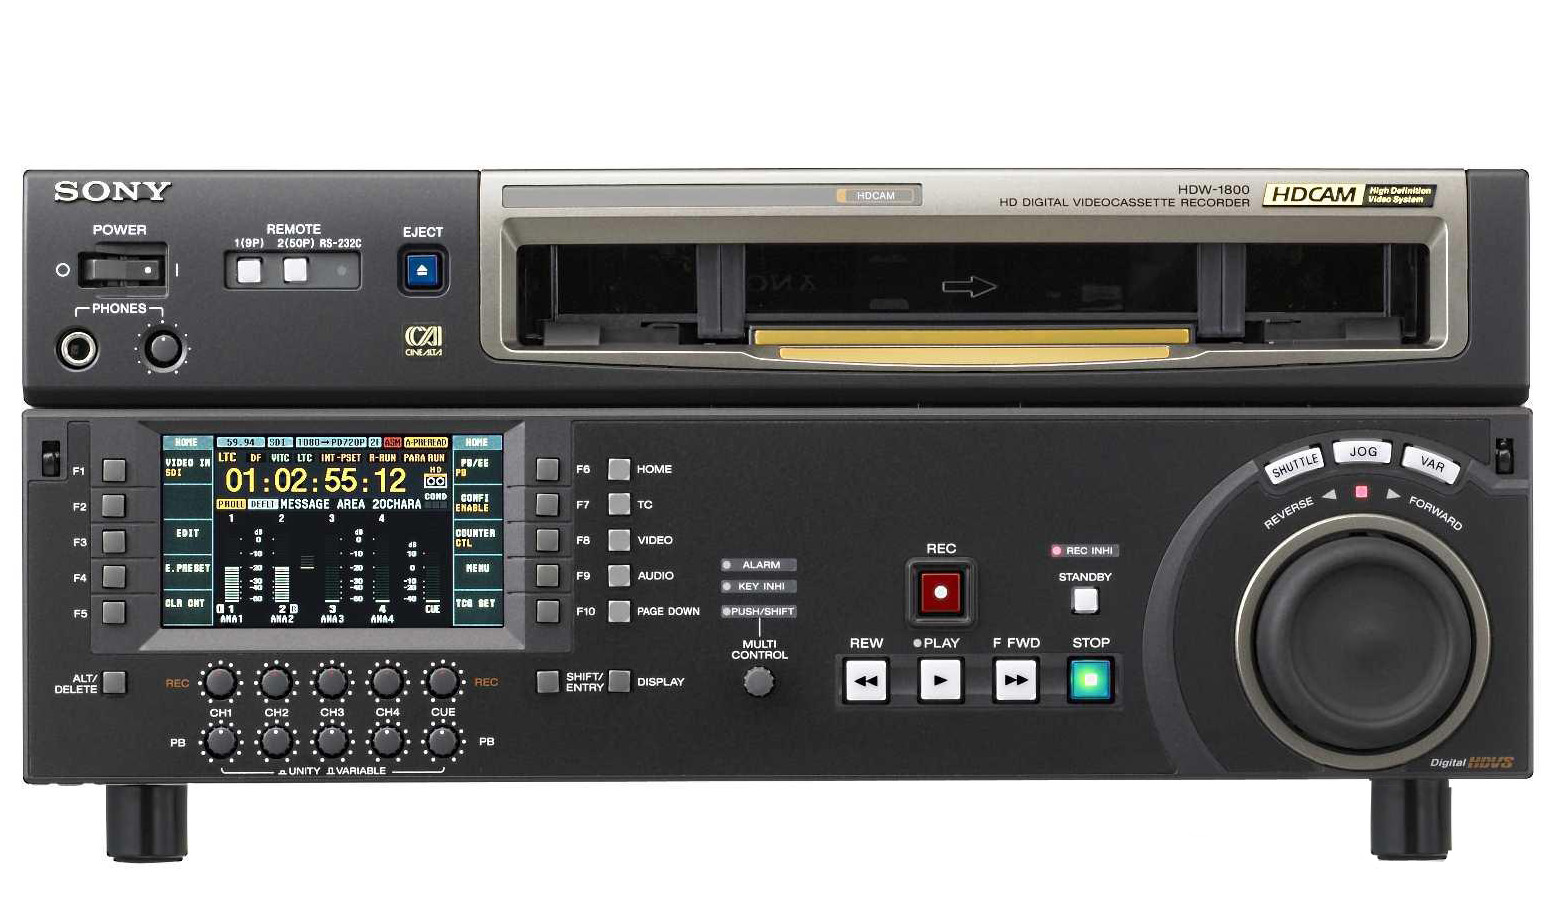 SONY HDW-D1800 HDCAM